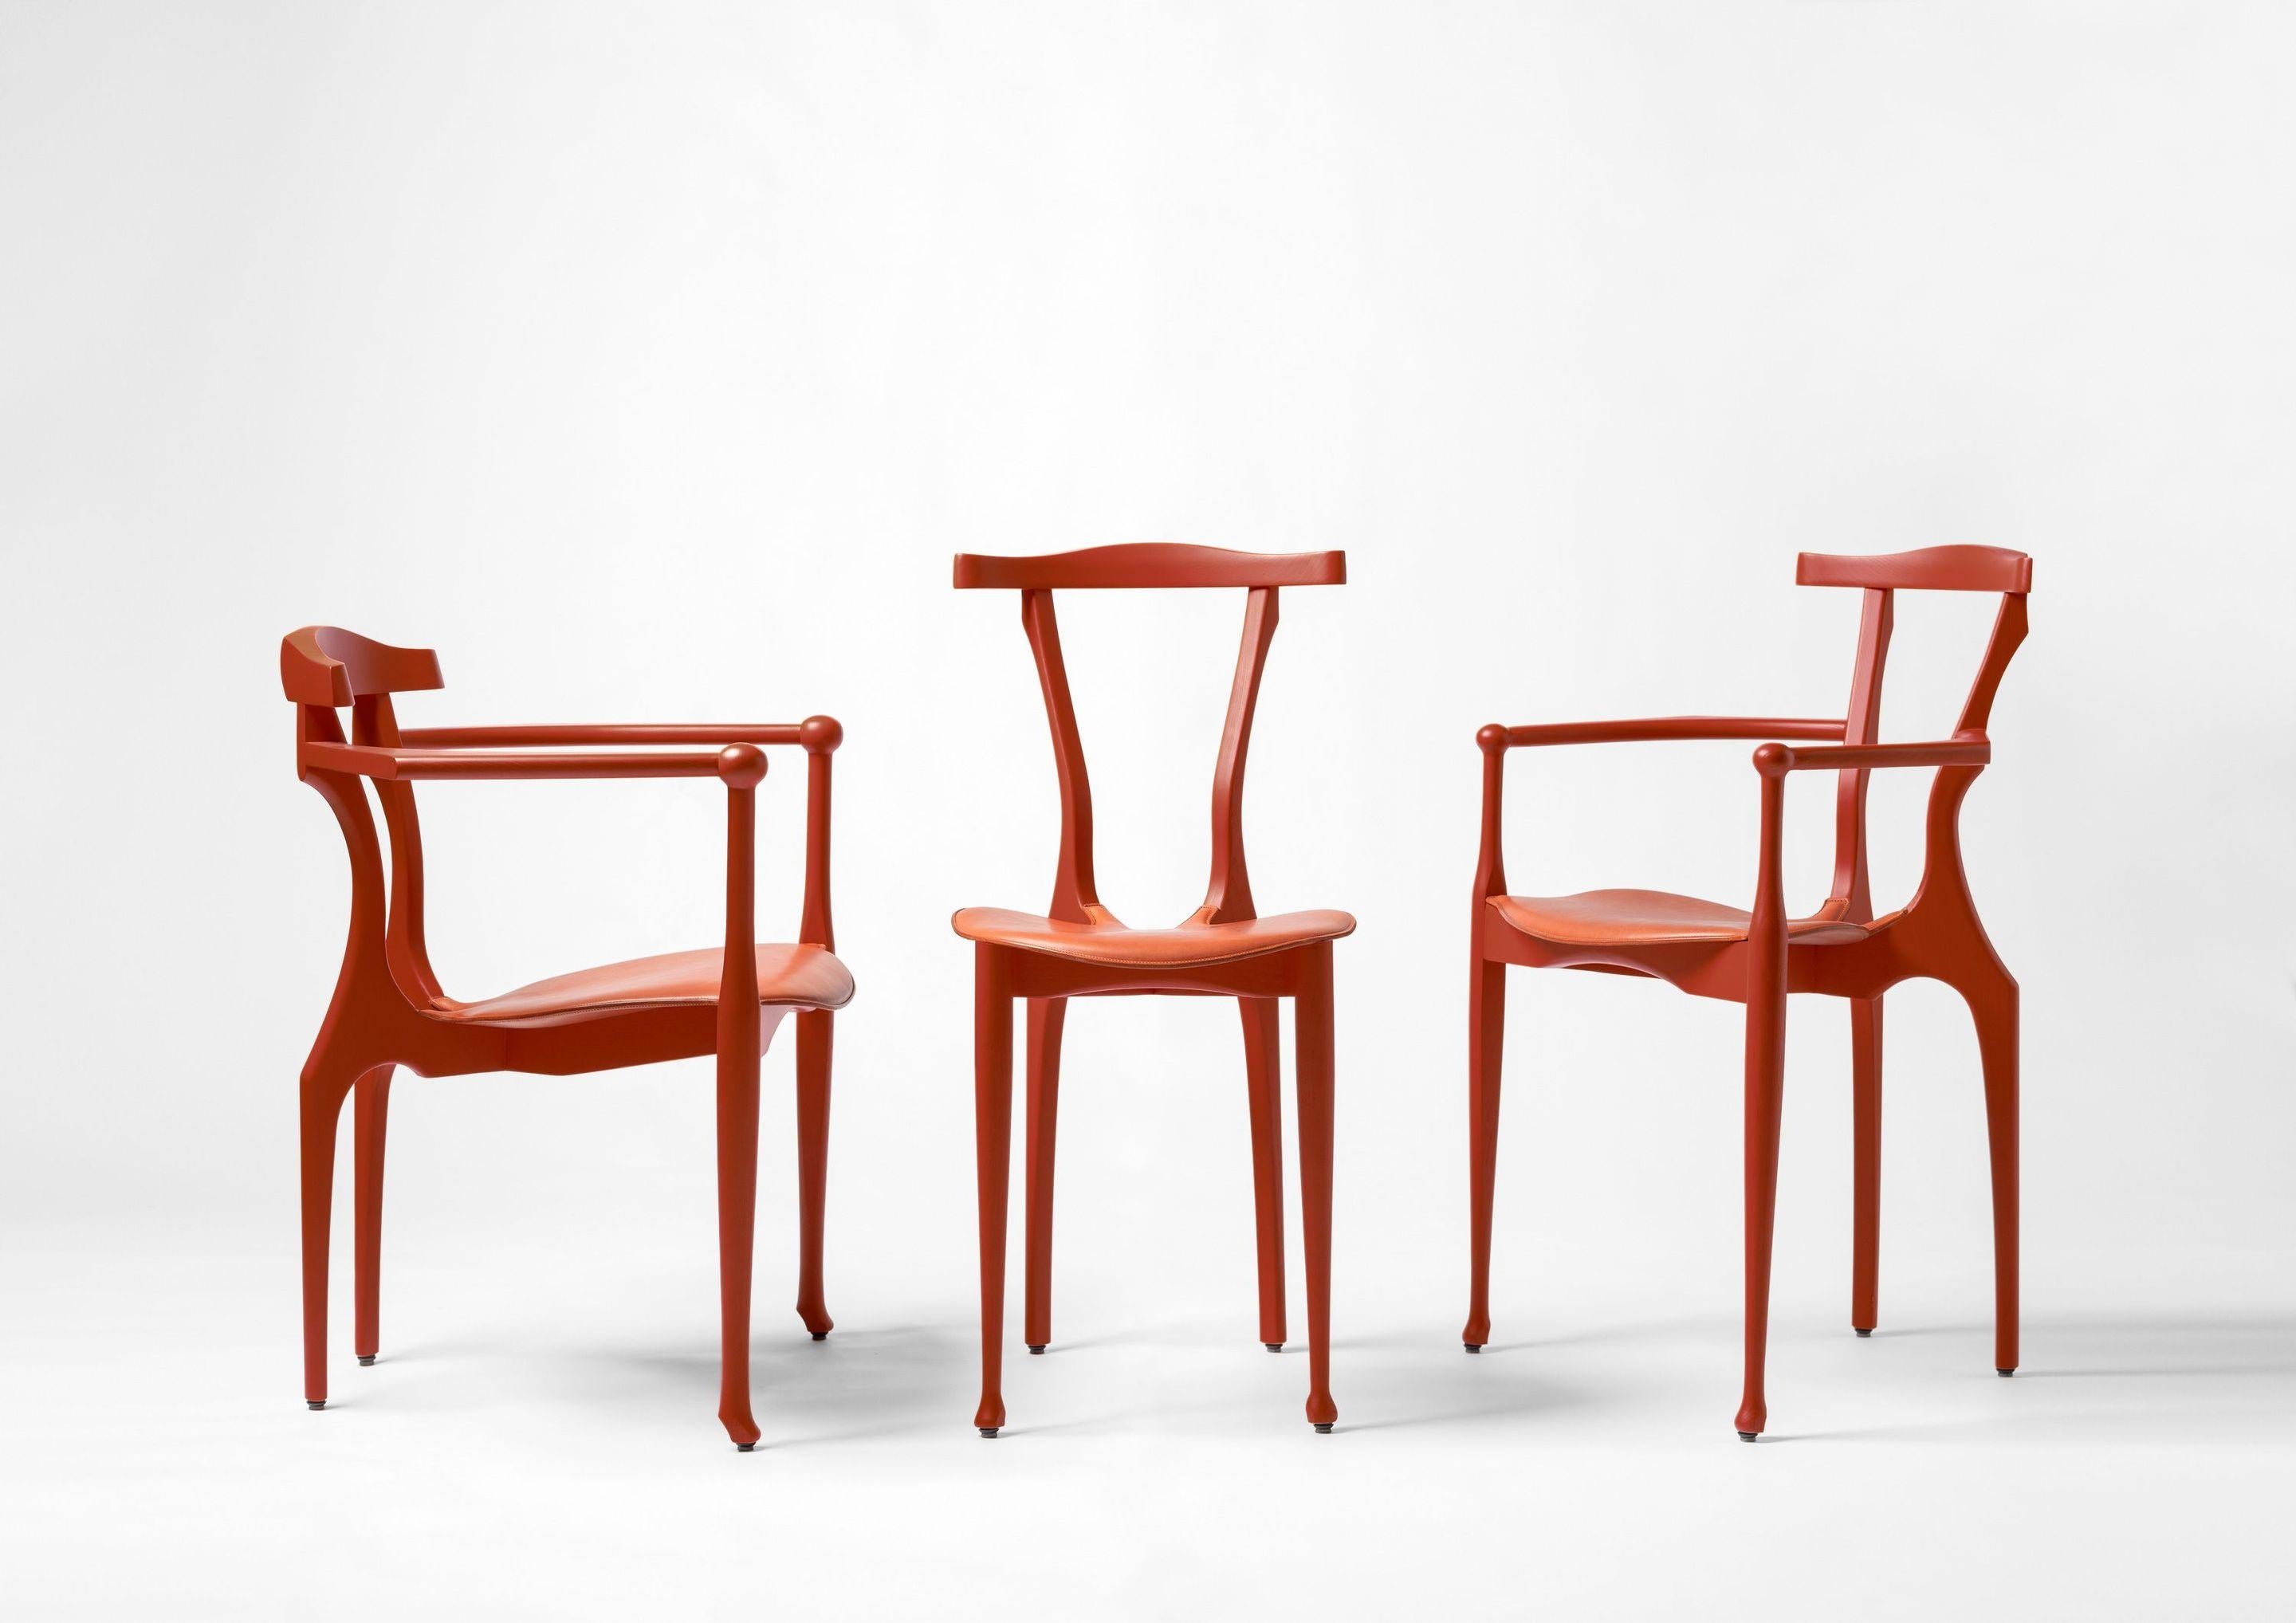 Inspiré par Enzo Mari et sa chaise Tonietta, Oscar Tusquets a créé une chaise Tonietta. 
adaptation de son Gaulino : La Gaulinetta. La réduction des accoudoirs Gaulino par Tusquets génère un modèle épuré idéal.  pour les repas dans des espaces plus